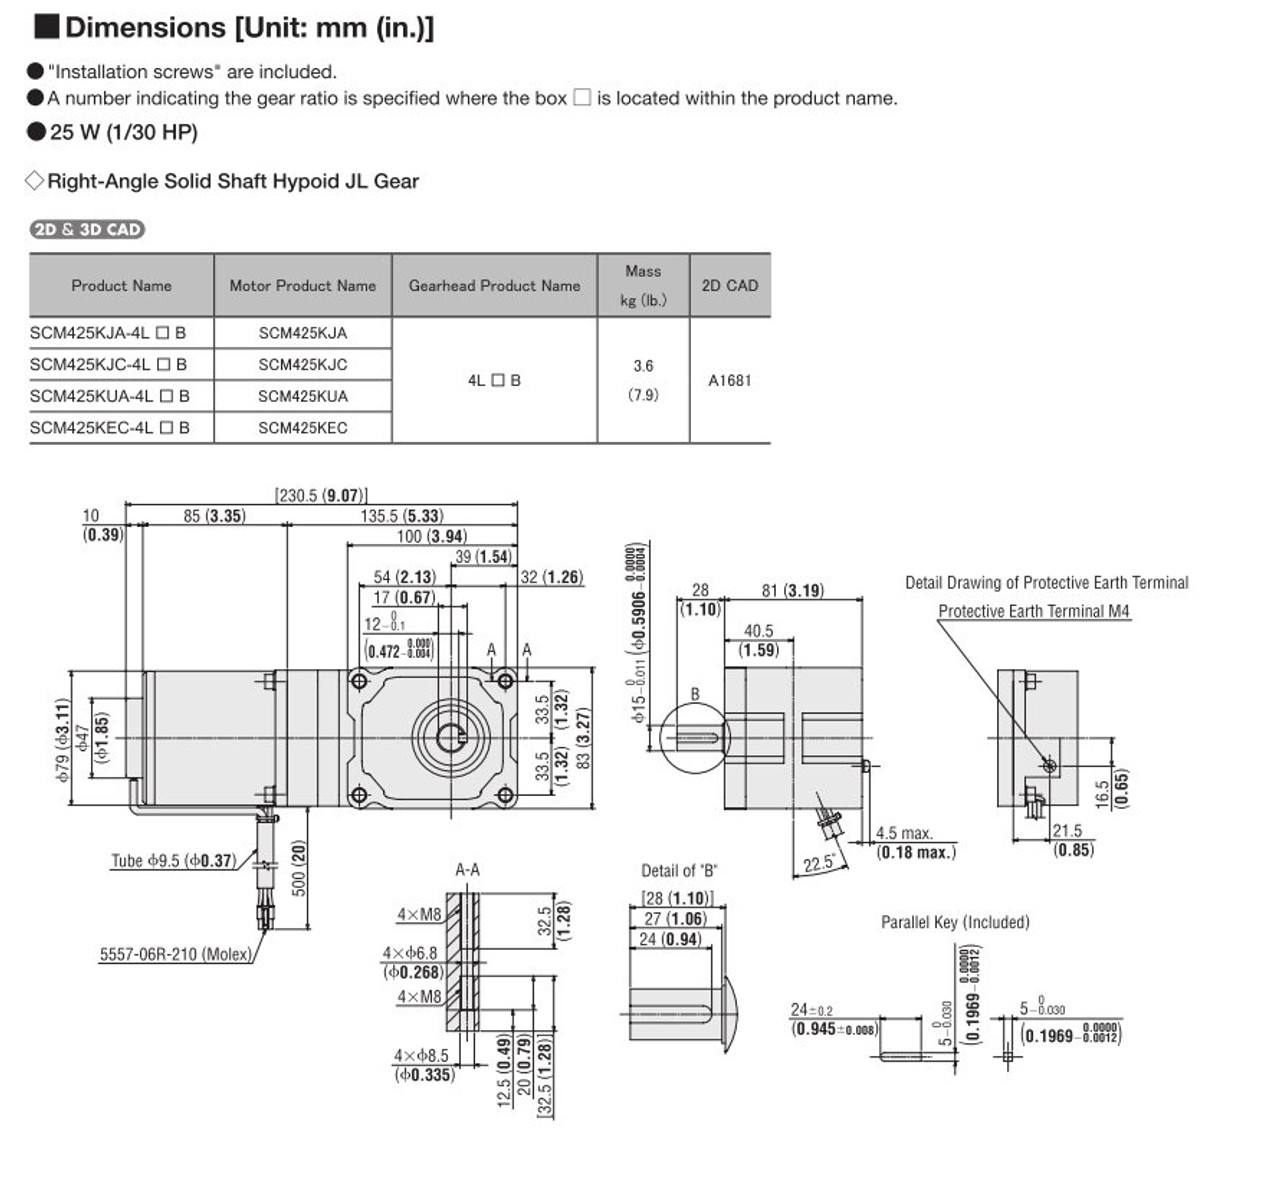 SCM425KEC-4L200B - Dimensions